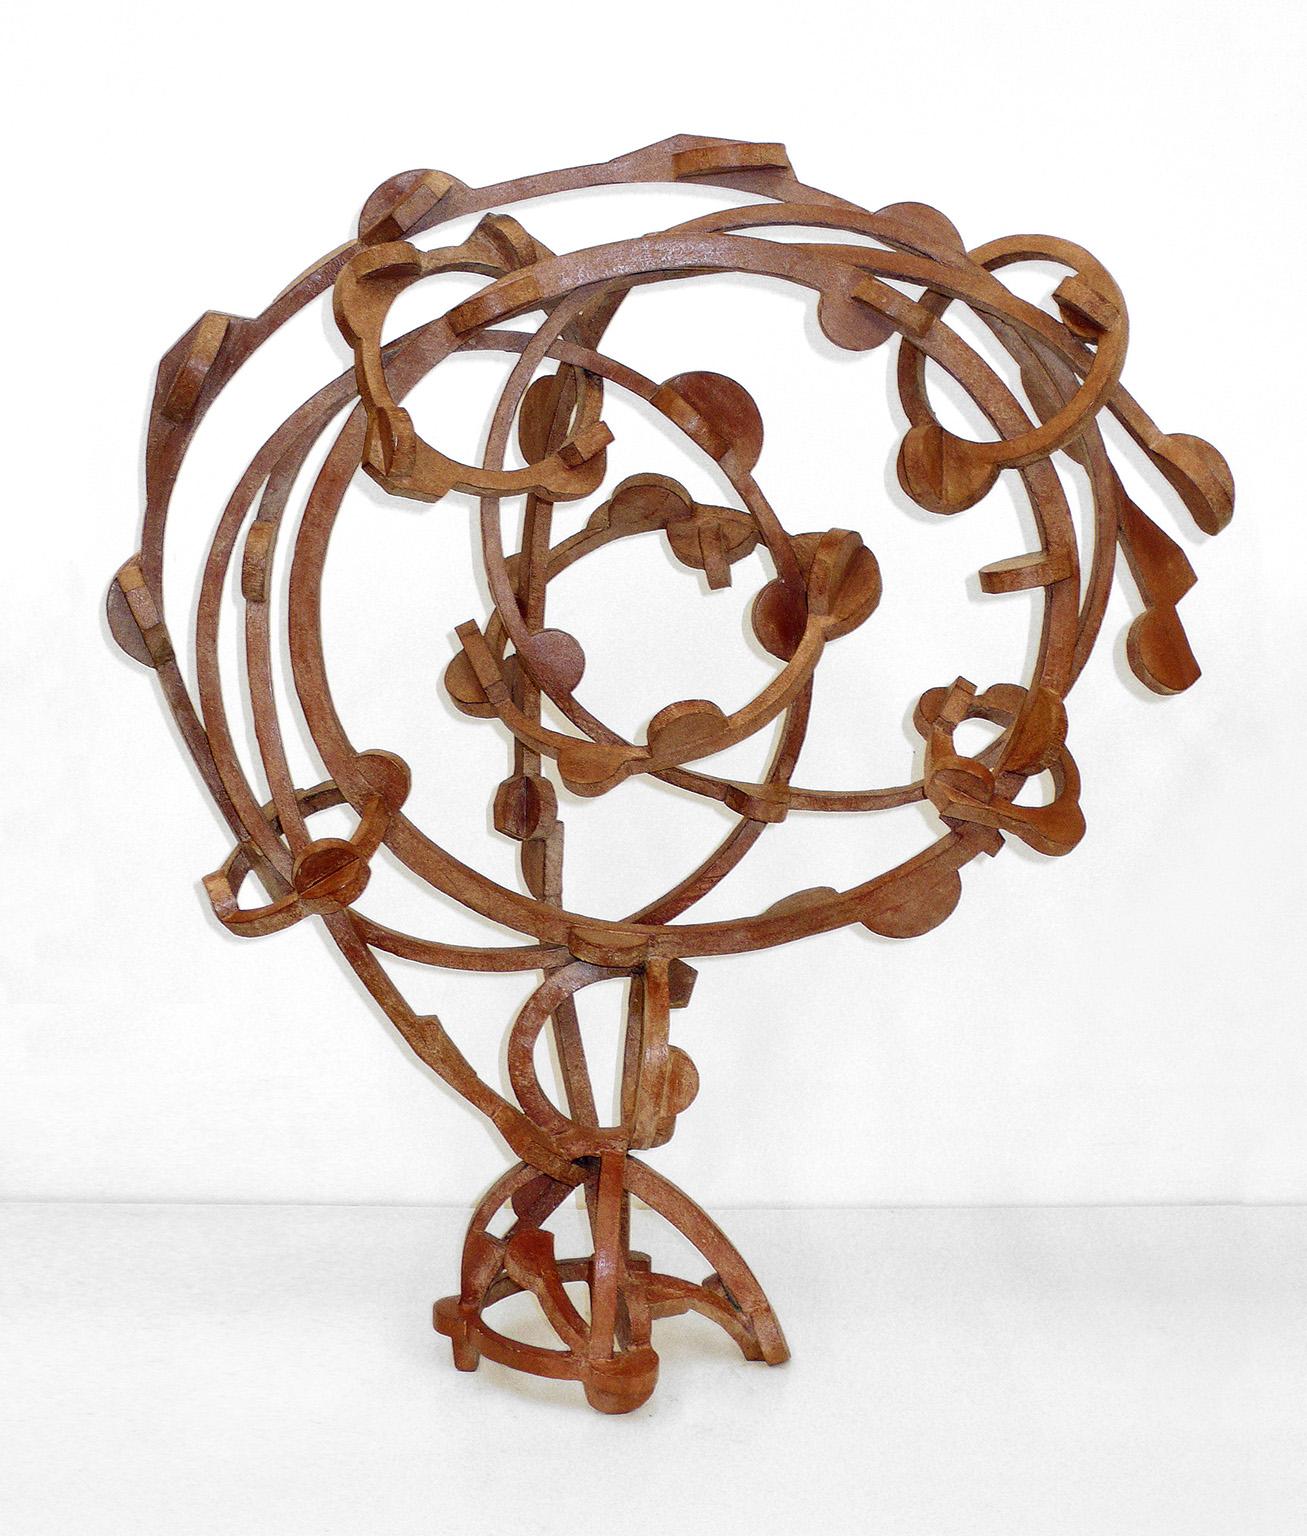 Joel Perlman Abstract Sculpture - "Terracotta" Abstract, Industrial Bronze Metal Sculpture